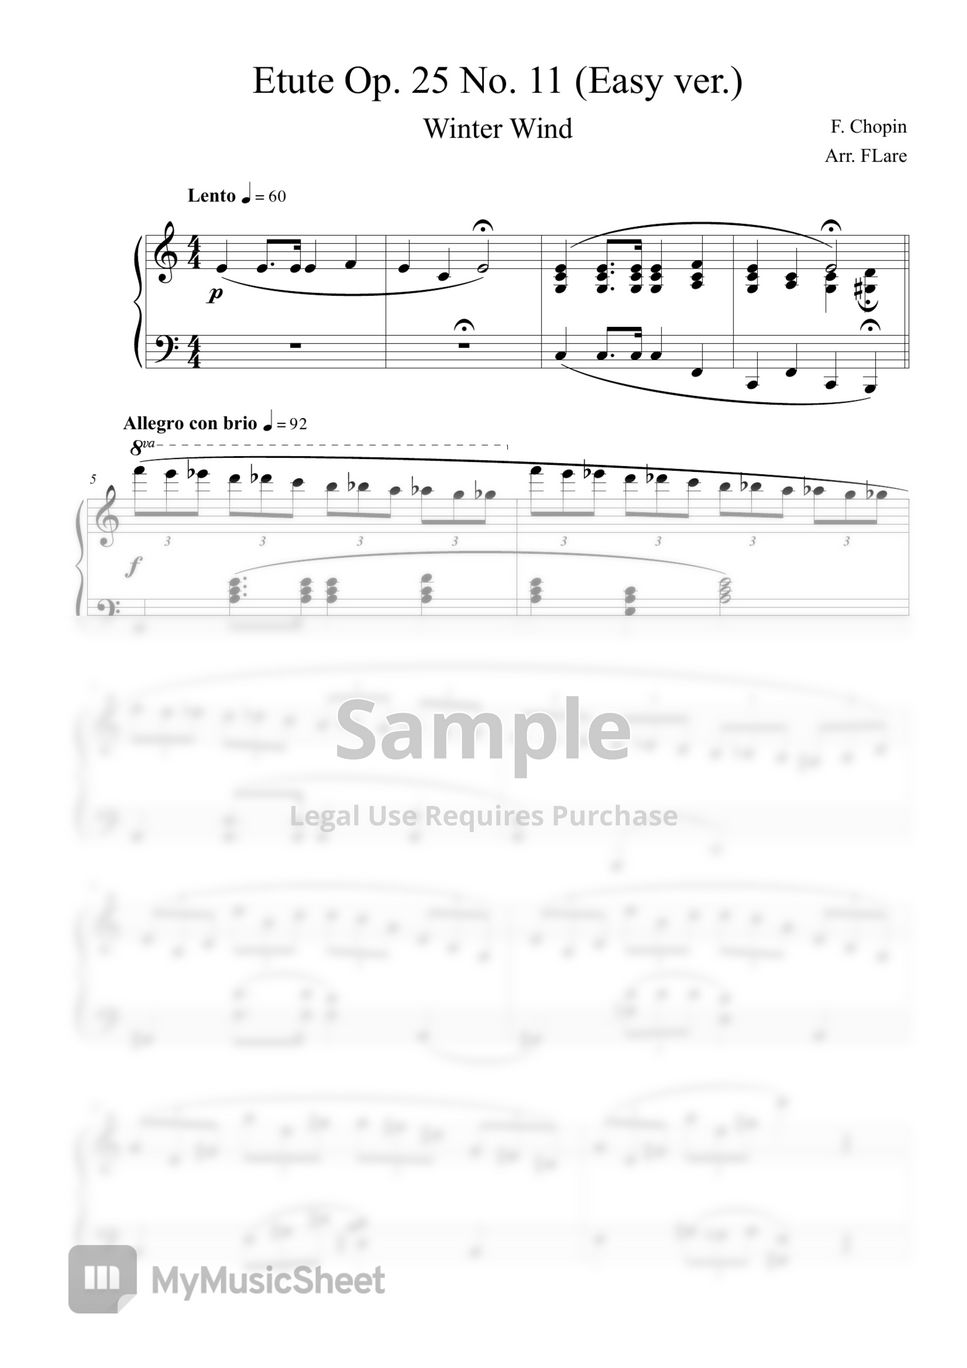 F. Chopin (쇼팽) - 에튀드 Op.25 No.11 겨울바람 (쉬운 악보) by FLare